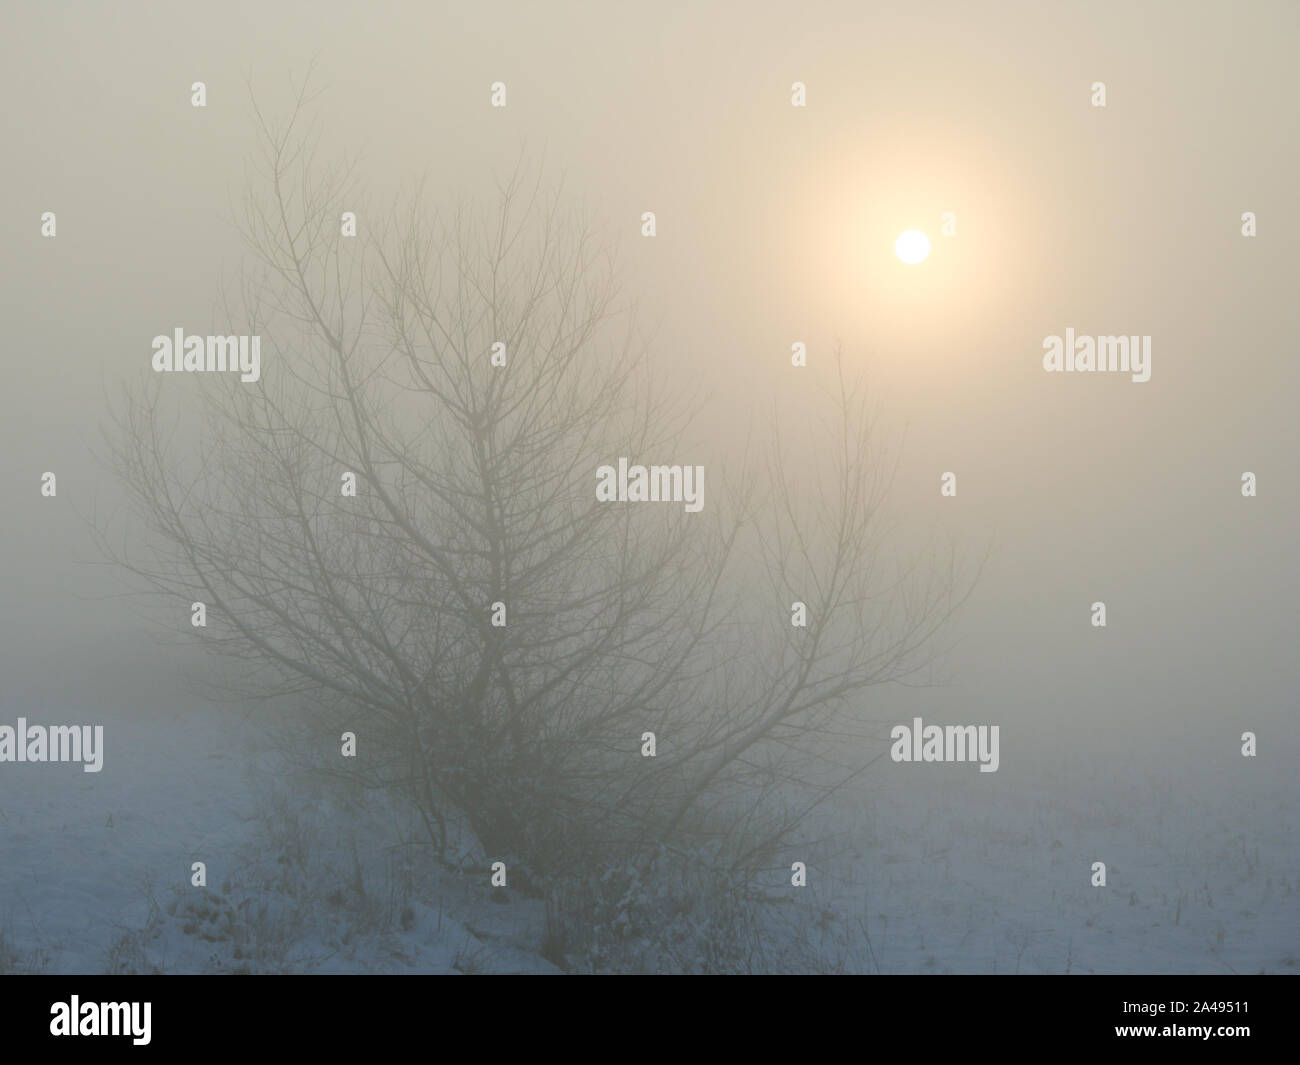 Le soleil brille à travers une couche de brouillard avec un arbre dans un paysage de neige Banque D'Images